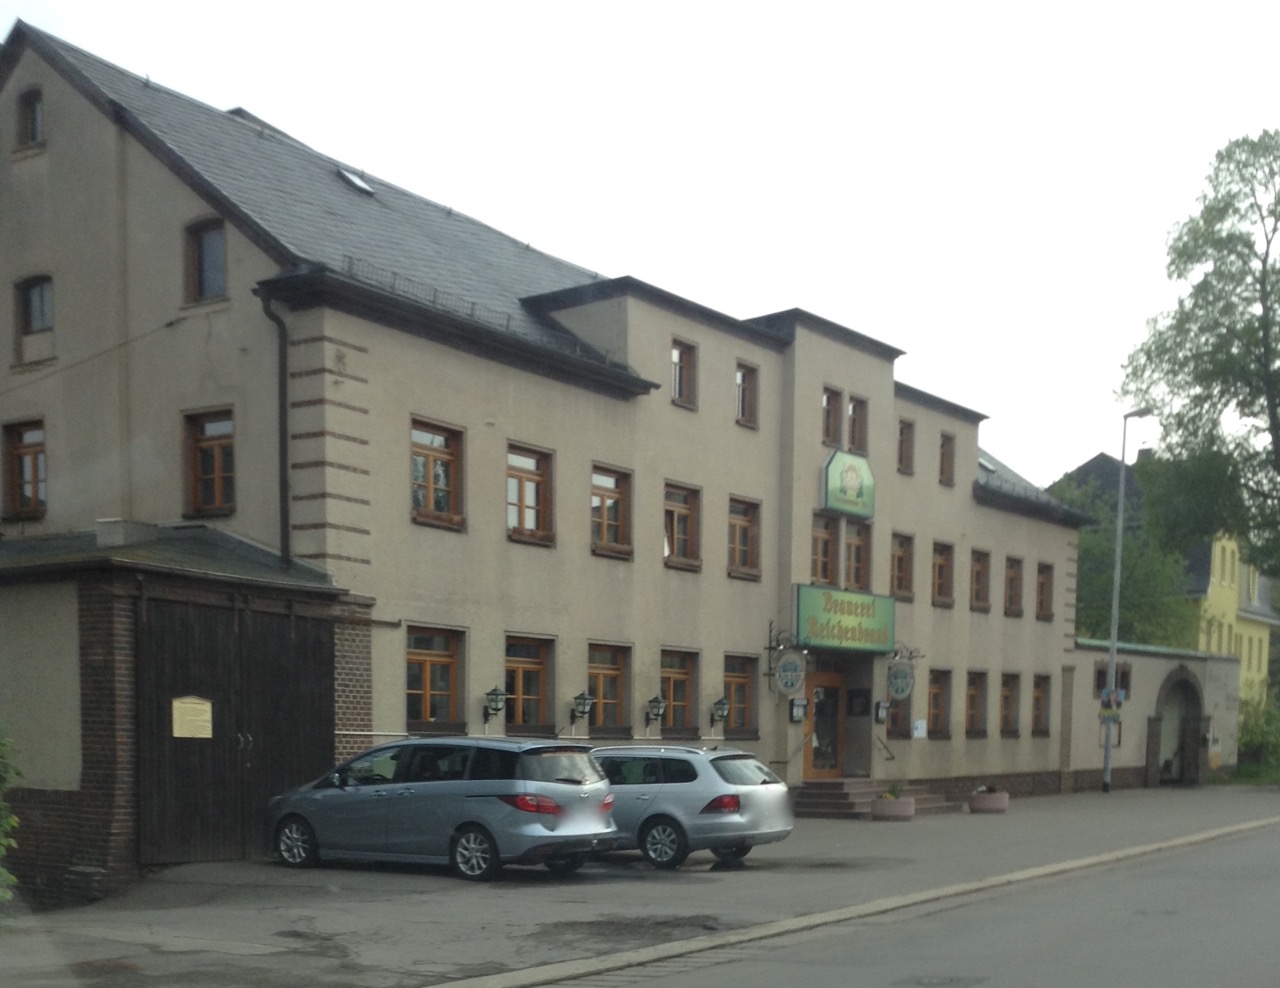 Gasthof der Brauerei Reichenbrand in Chemnitz